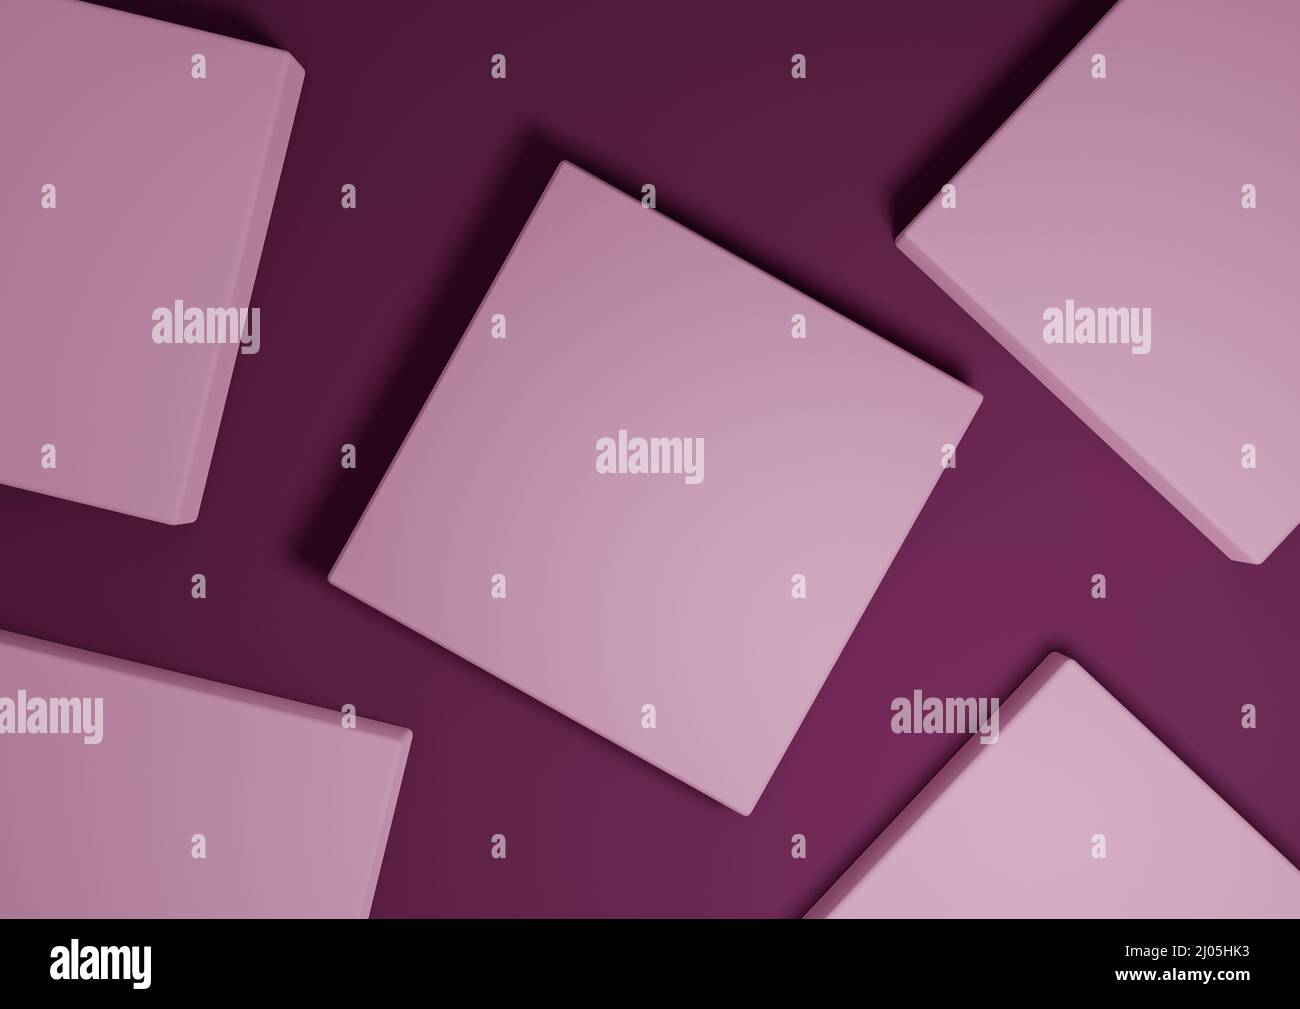 Magenta foncé, violet, 3D rend minimal, simple vue de dessus plat de l'écran d'affichage des produits avec des supports de podium et des formes géométriques Banque D'Images